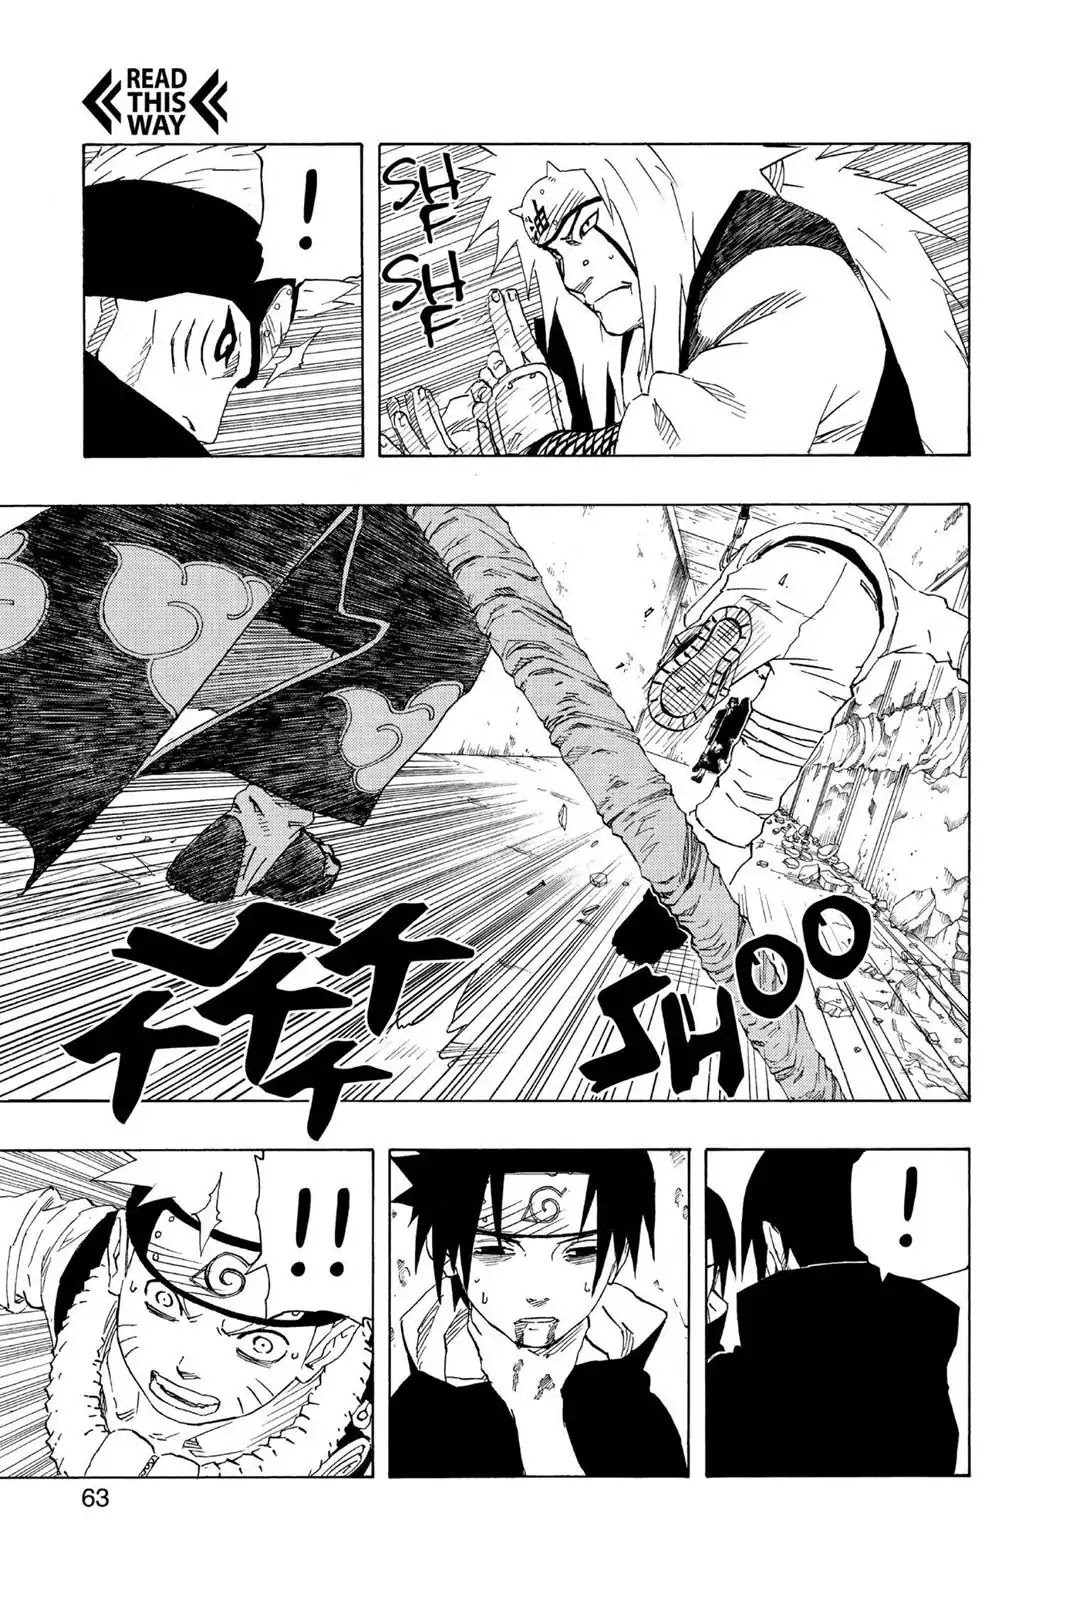 Jiraiya fazer frente a Itachi + Kisame não faz sentido para você? - Página 2 017